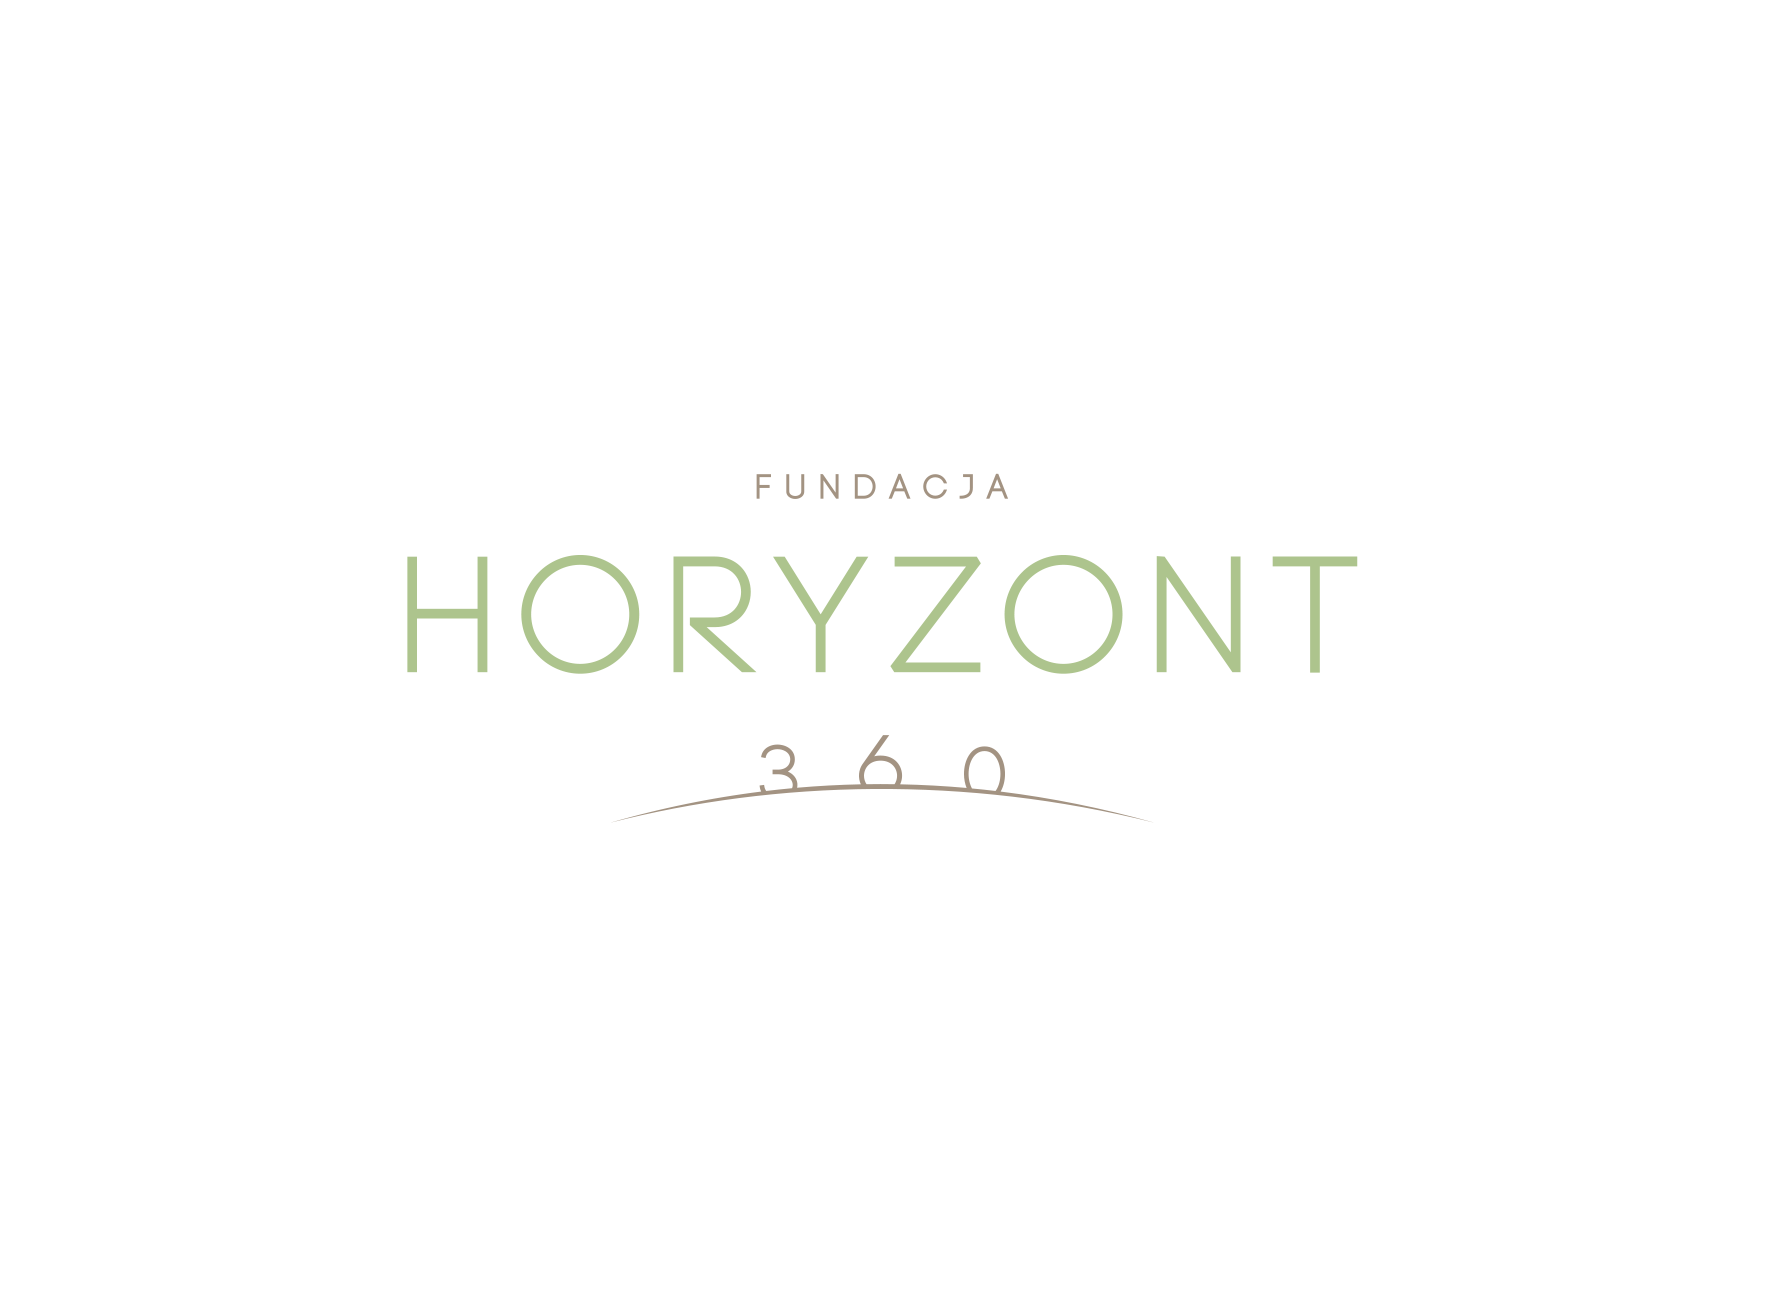 Fundacja Horyzont360